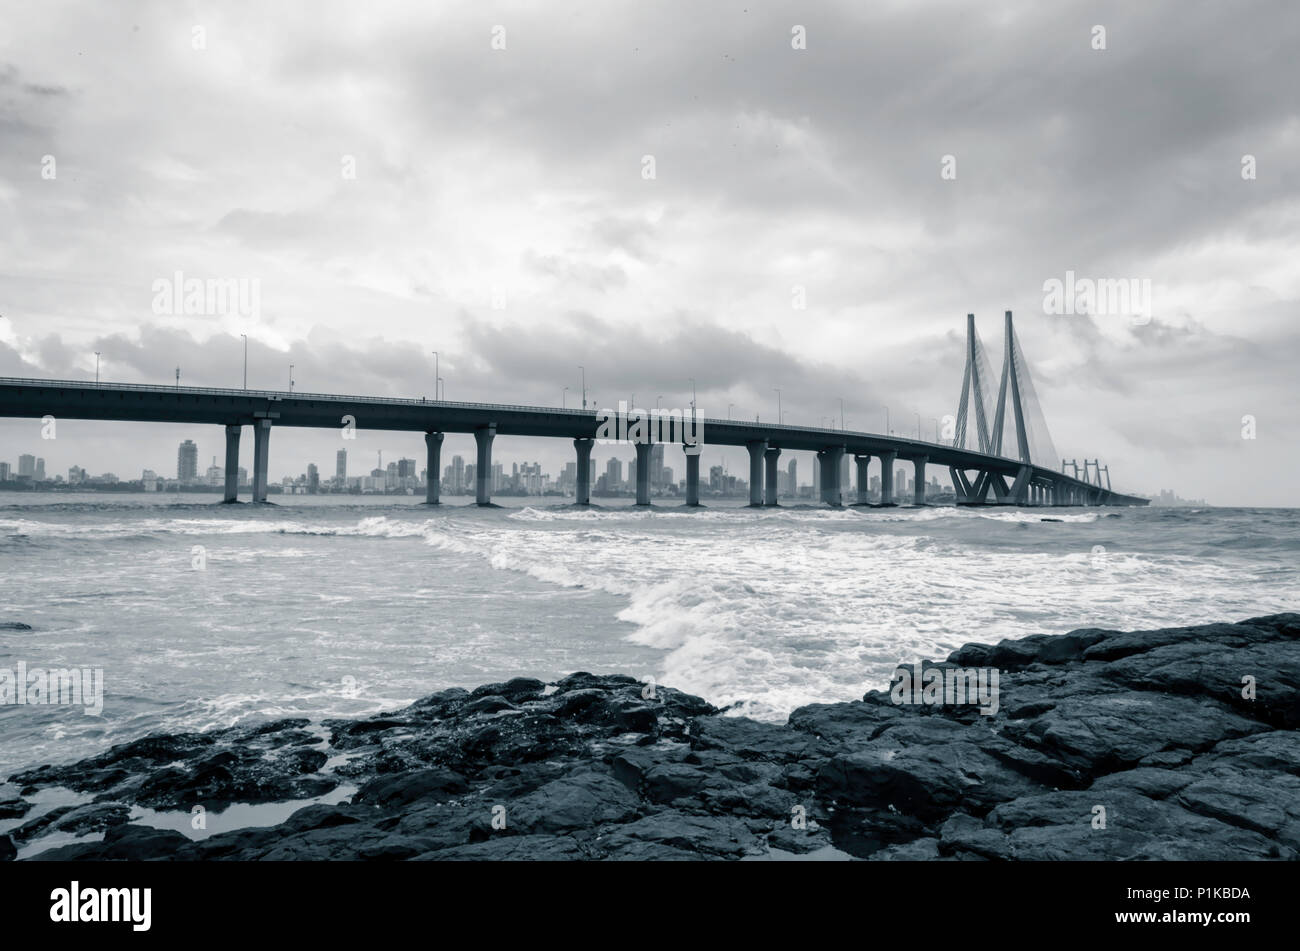 An overcast day at Bandra-Worli Sea link in Mumbai, India Stock Photo